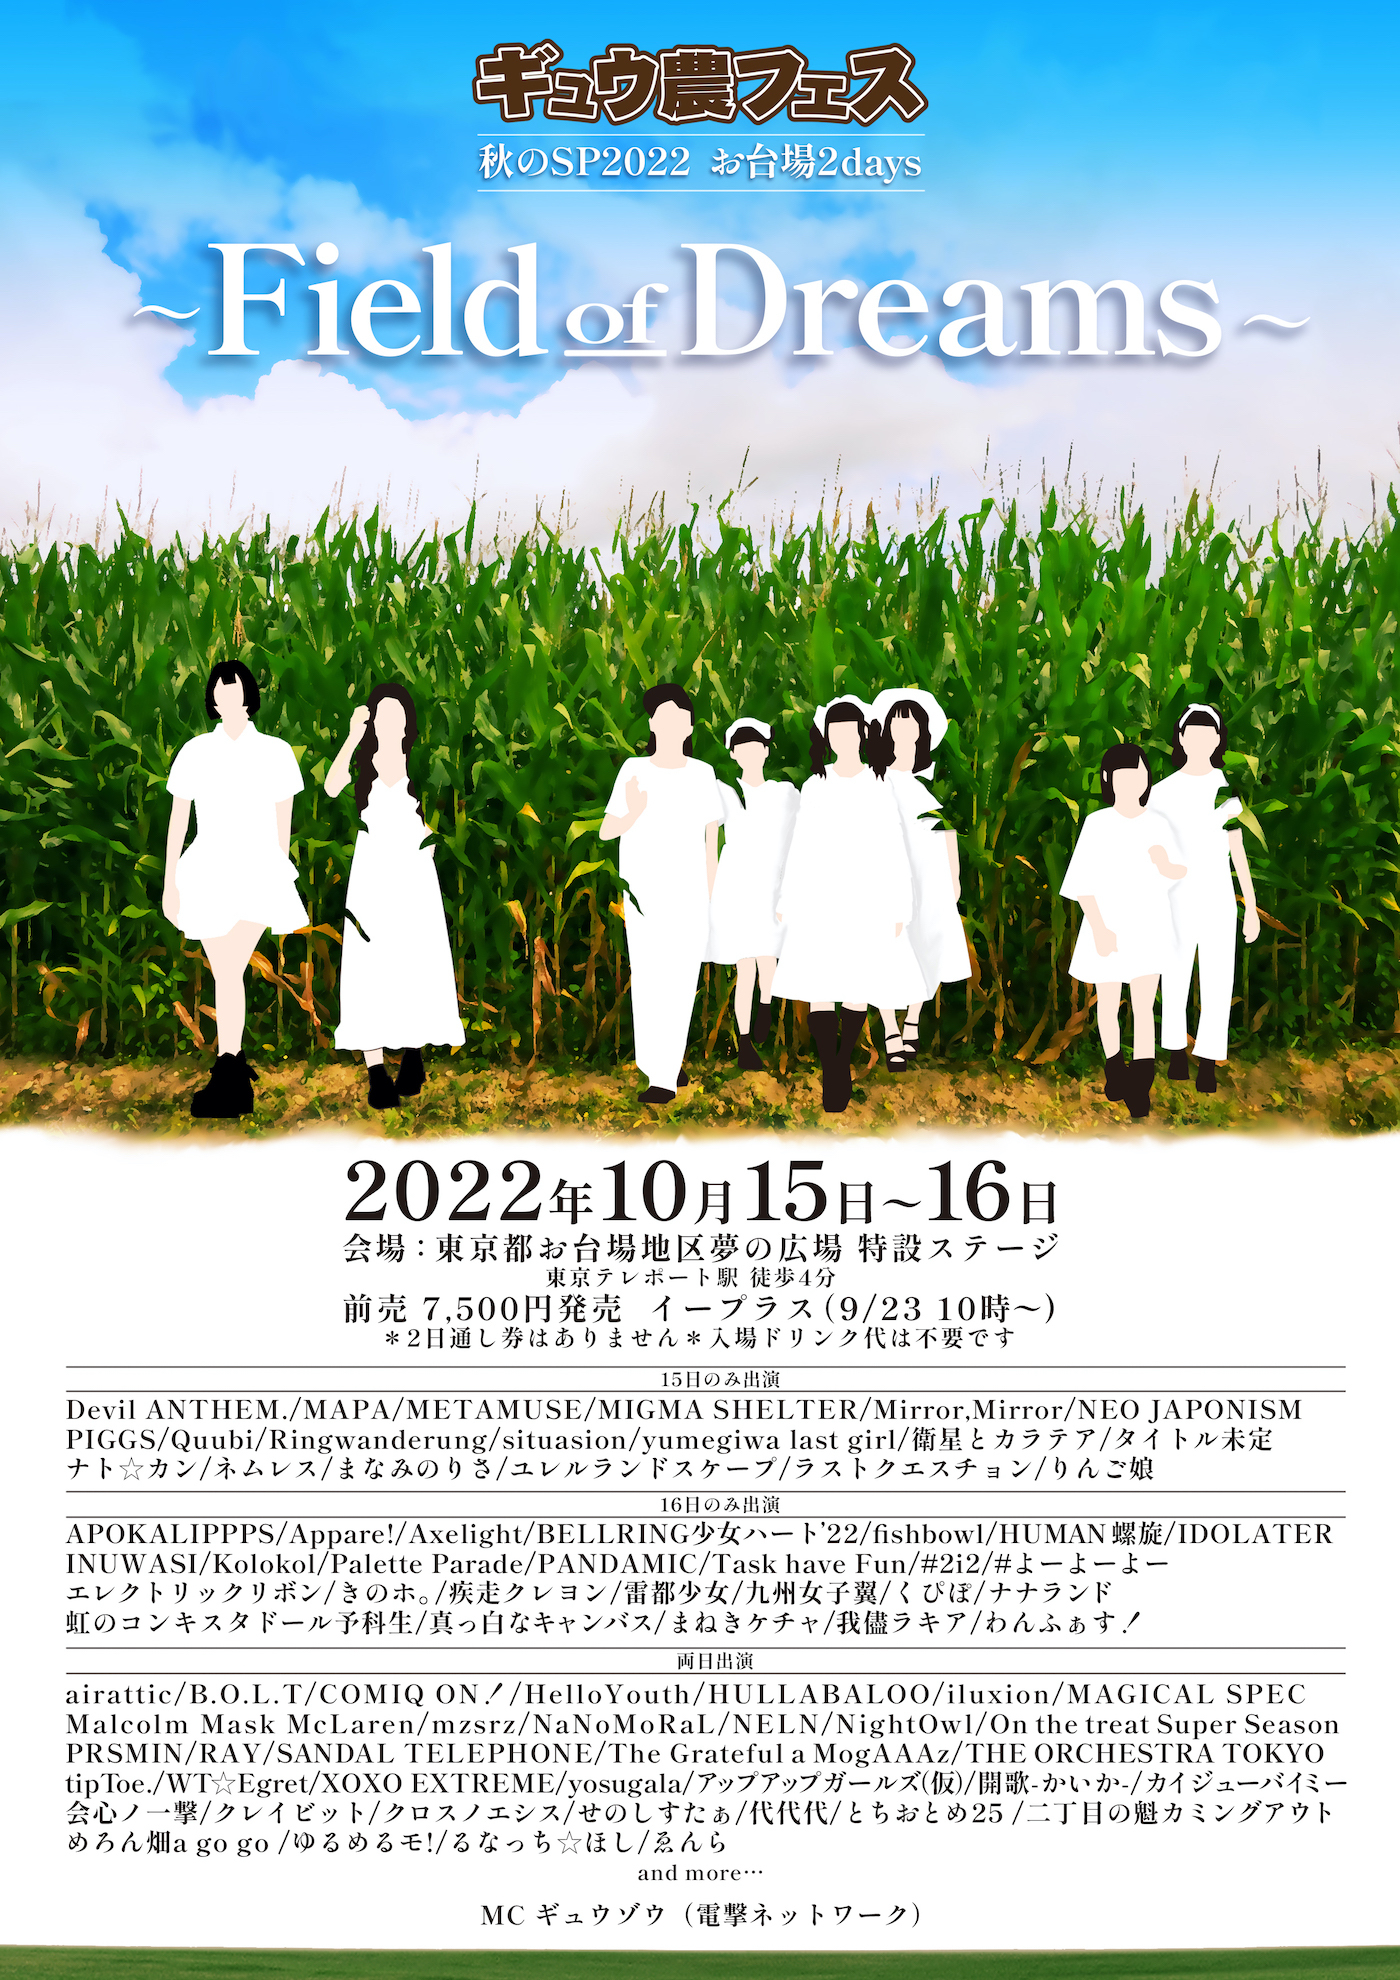 『ギュウ農フェス秋のSP2022 お台場2days -Field of Dreams-』